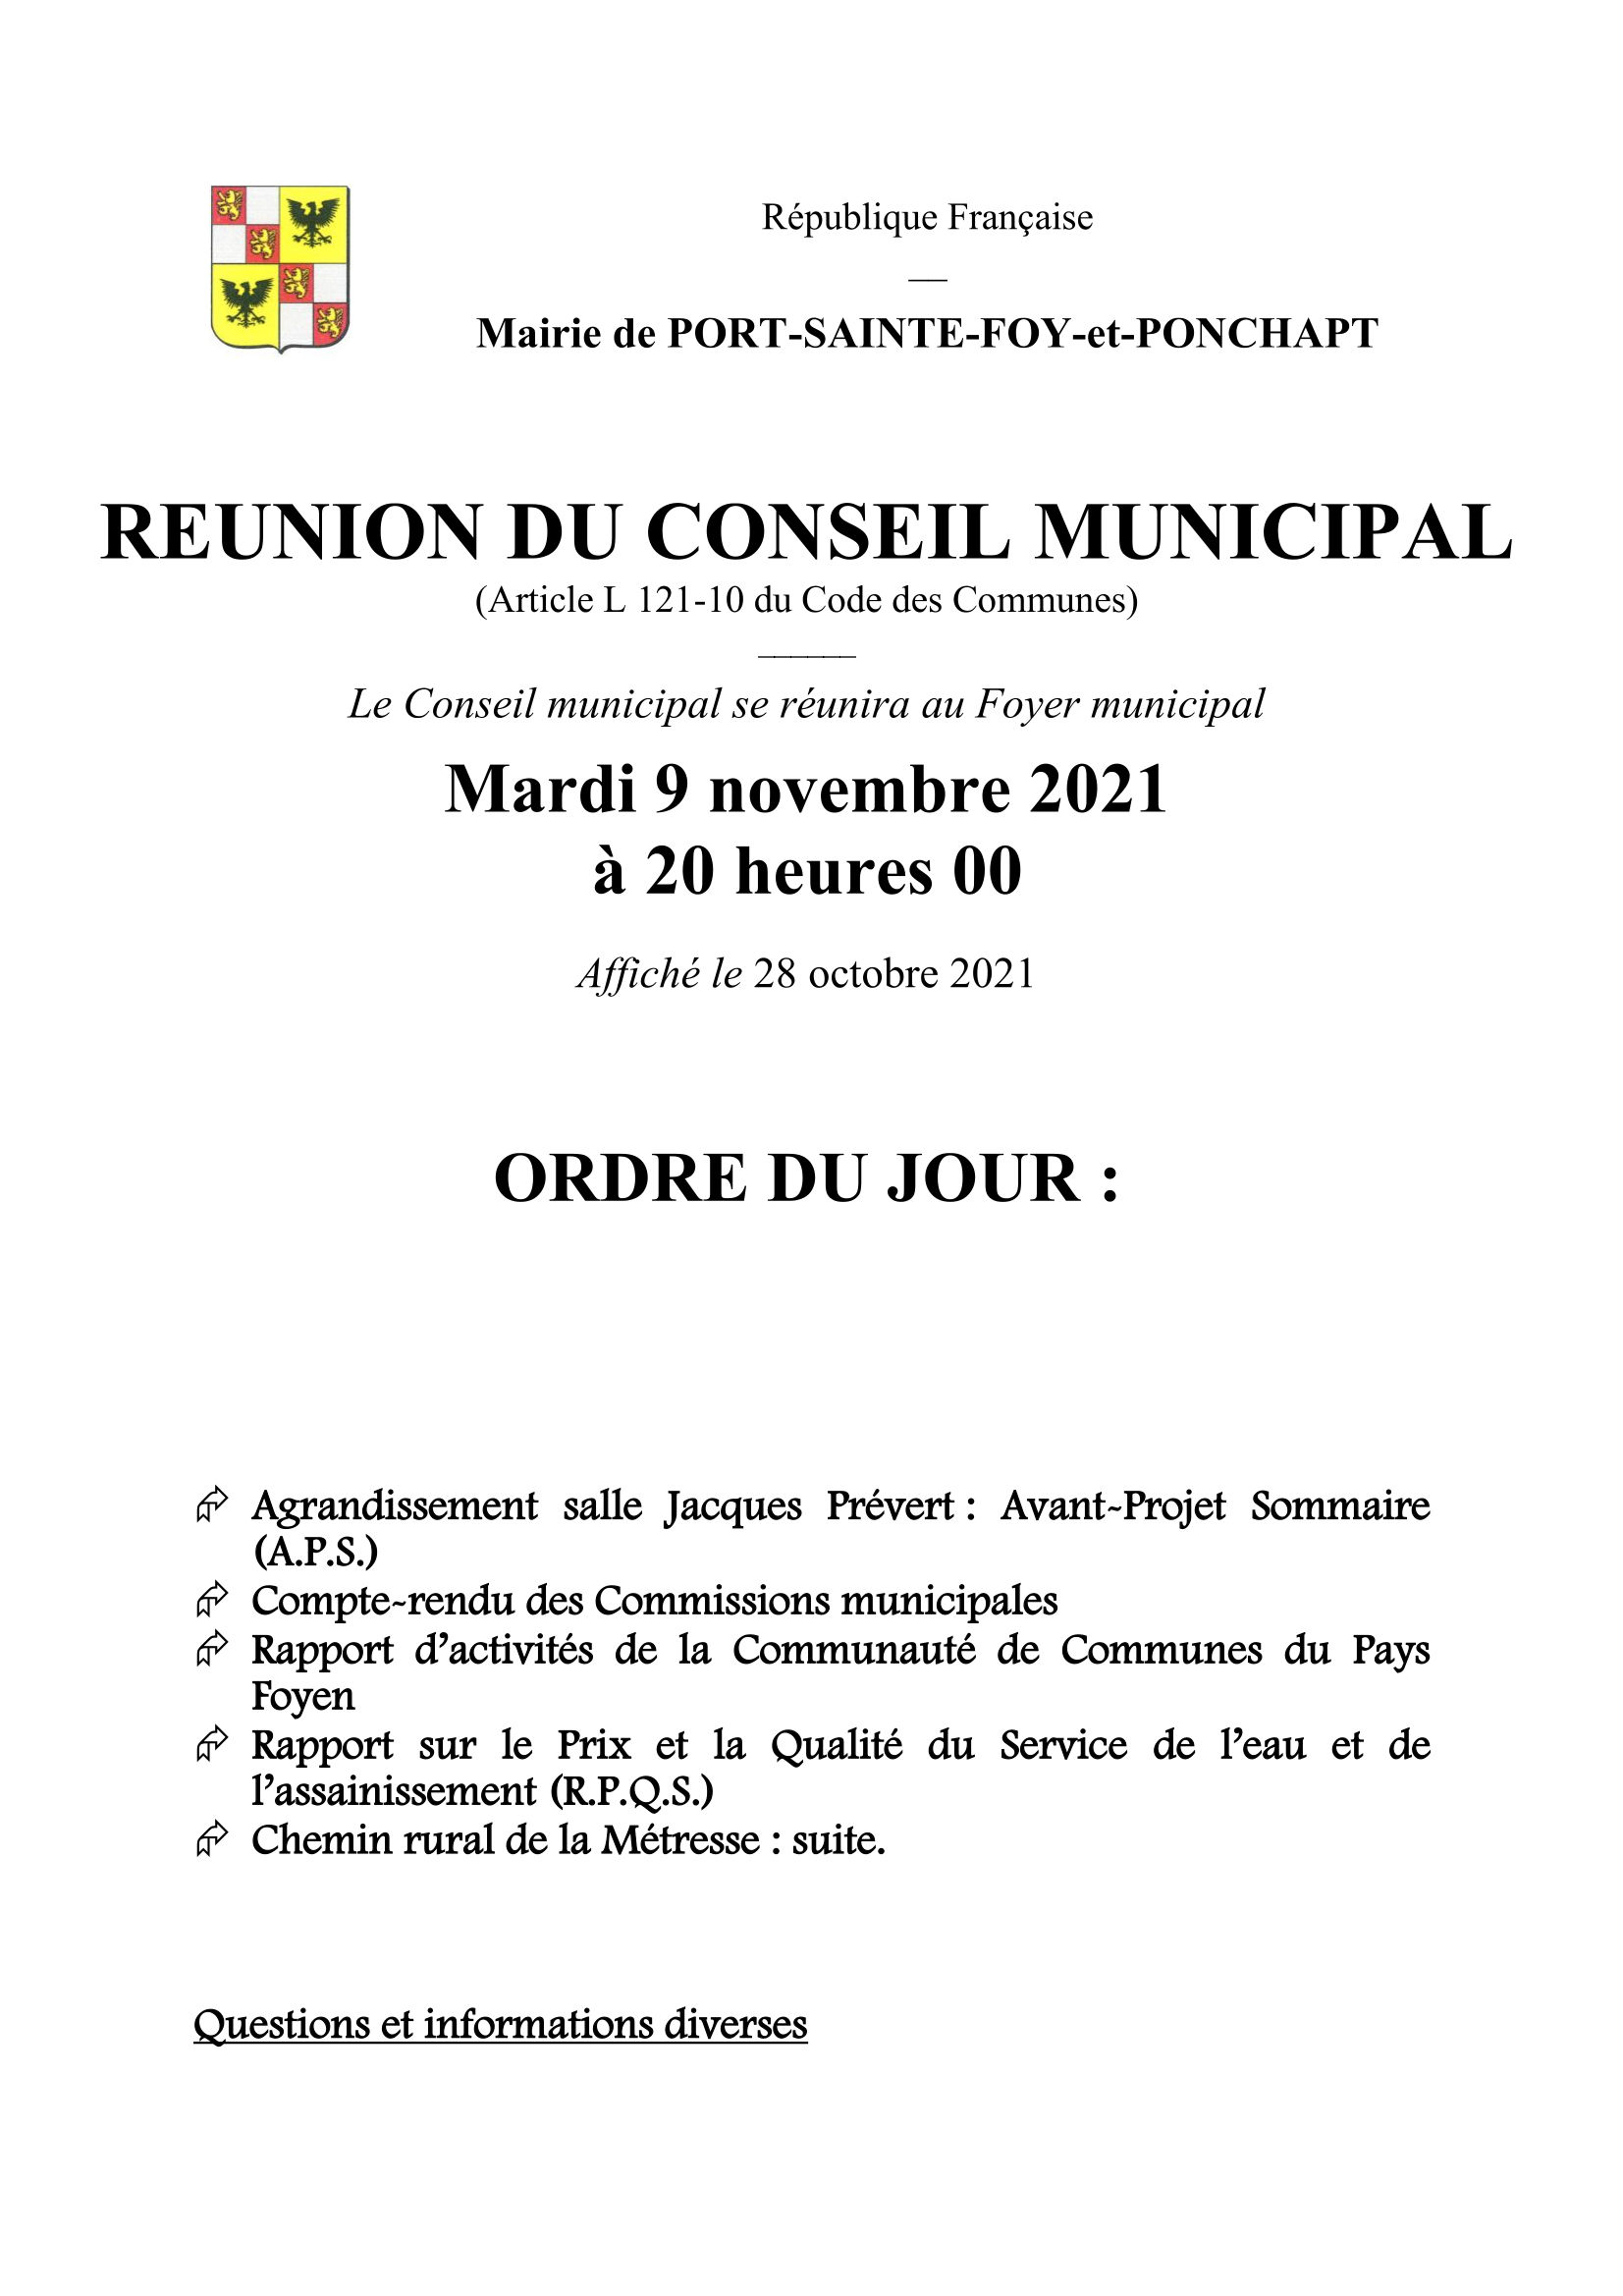 Ordre du jour du Conseil Municipal du 9 novembre 2021